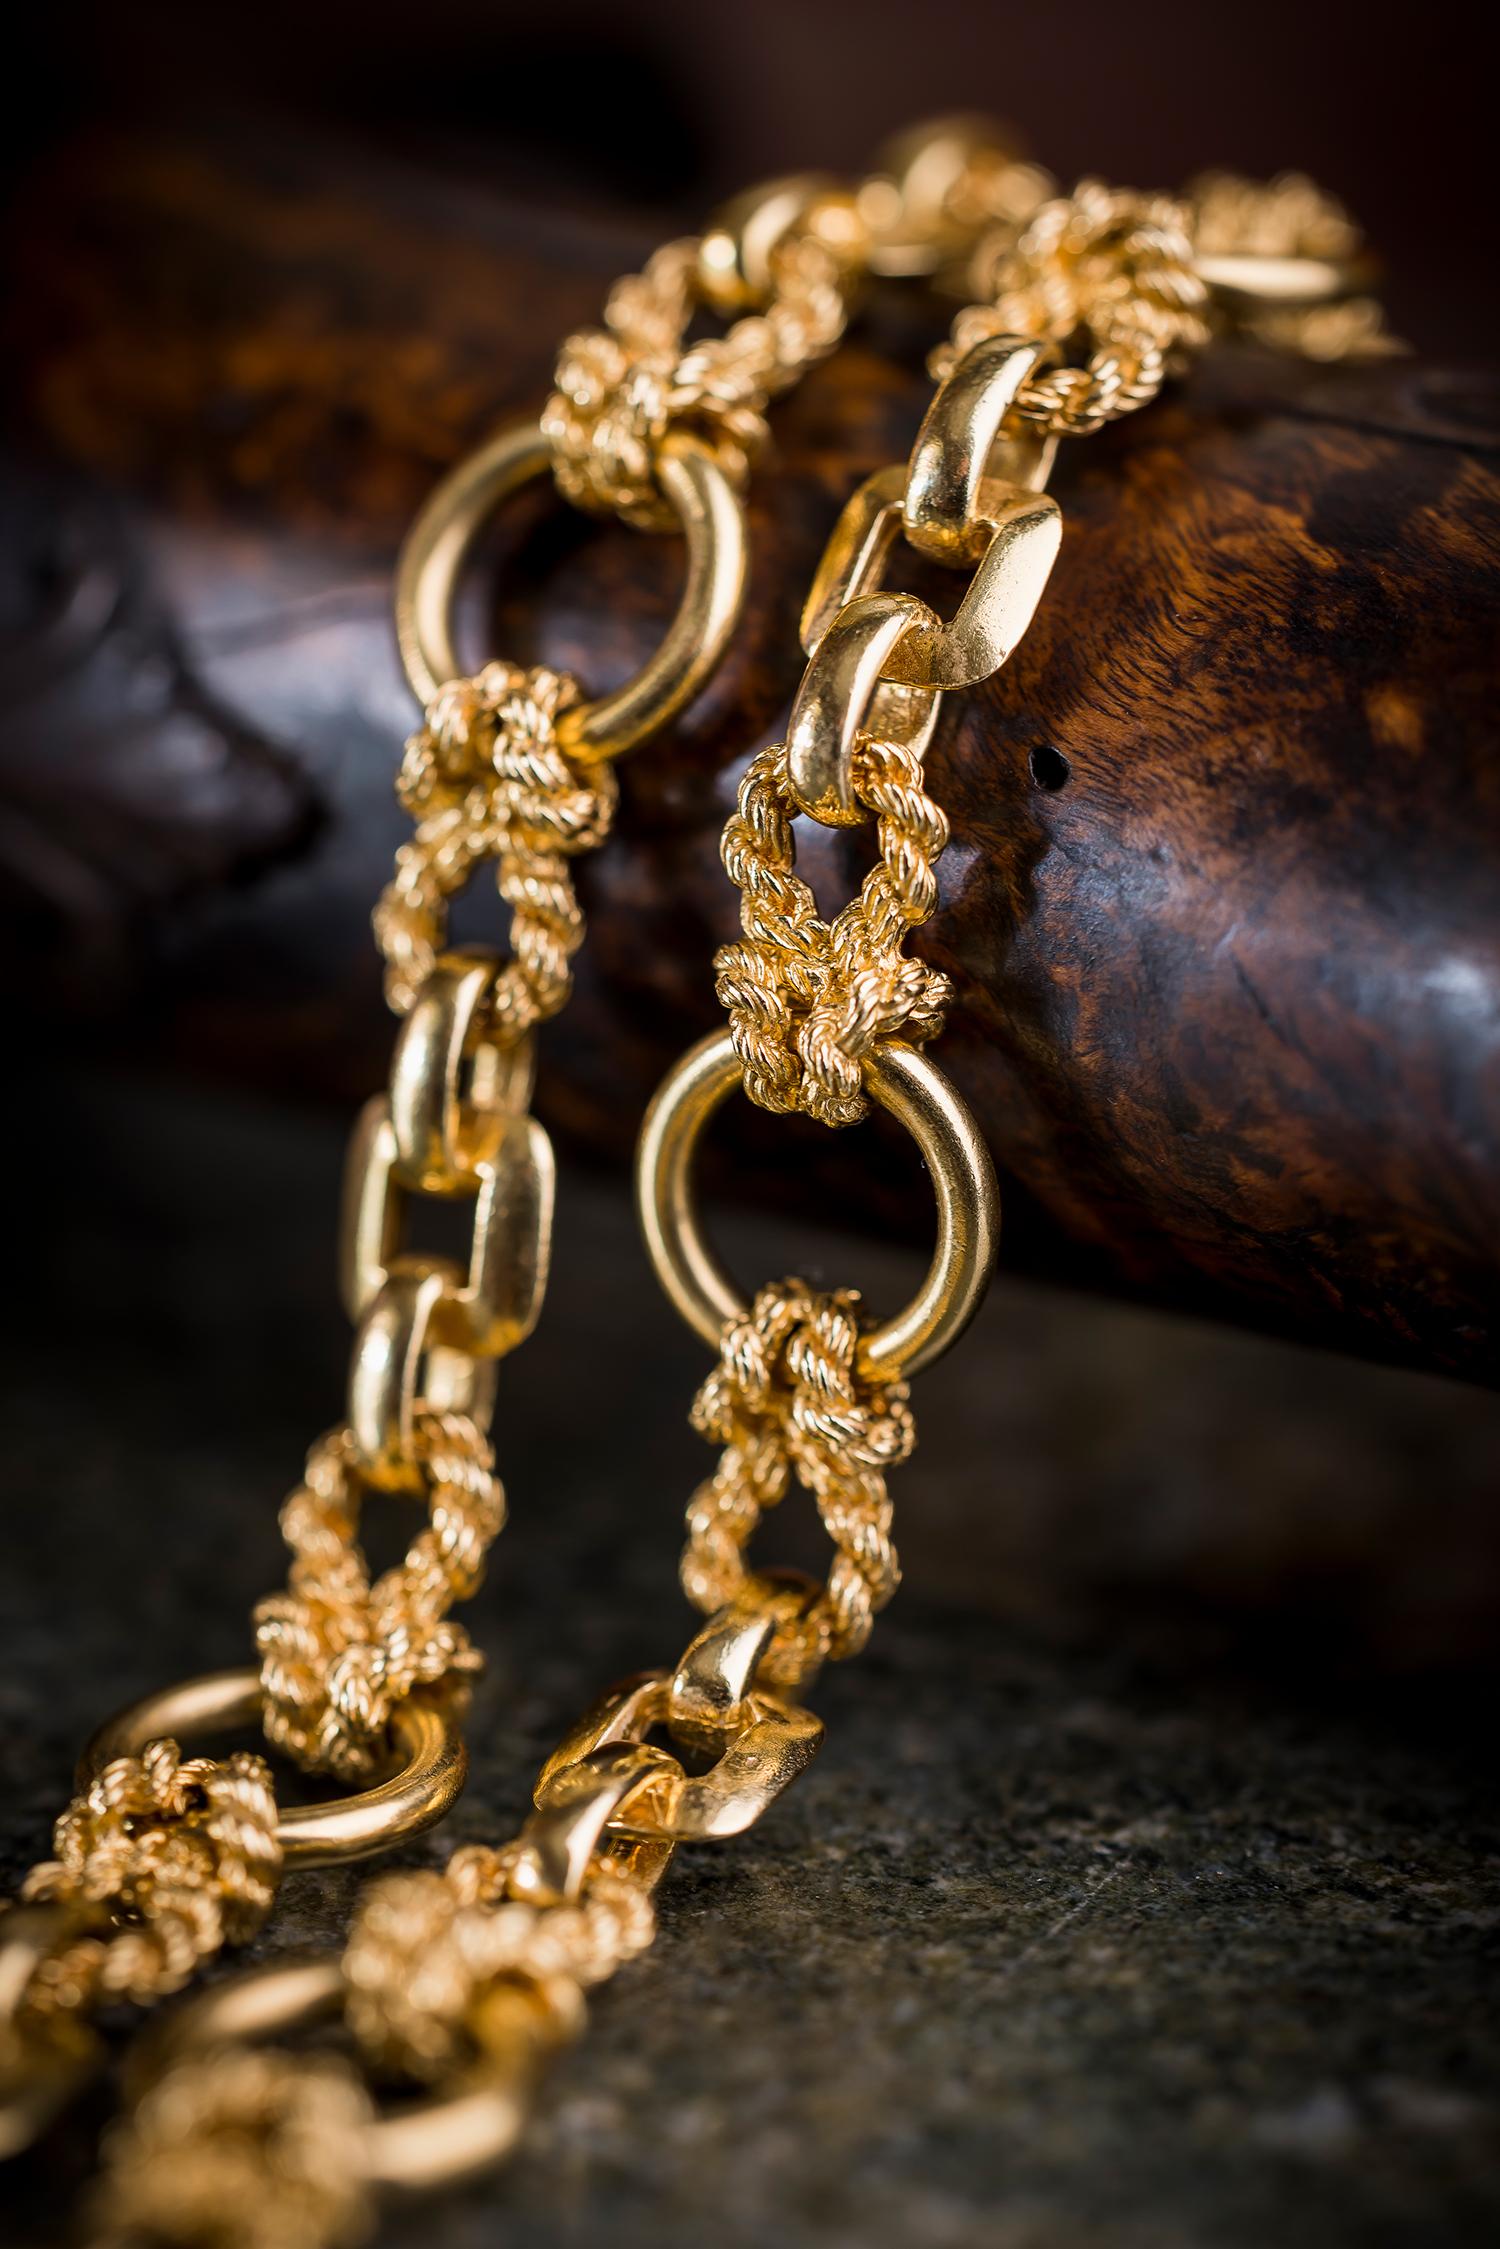 C'est vraiment fabuleux ! 

Rare ensemble collier et bracelet en or jaune 18 carats à maillons nautiques par Hermès

Collier et bracelet en or jaune 18 carats sertis de maillons en forme de corde, d'une boucle de fil d'or torsadé, du motif